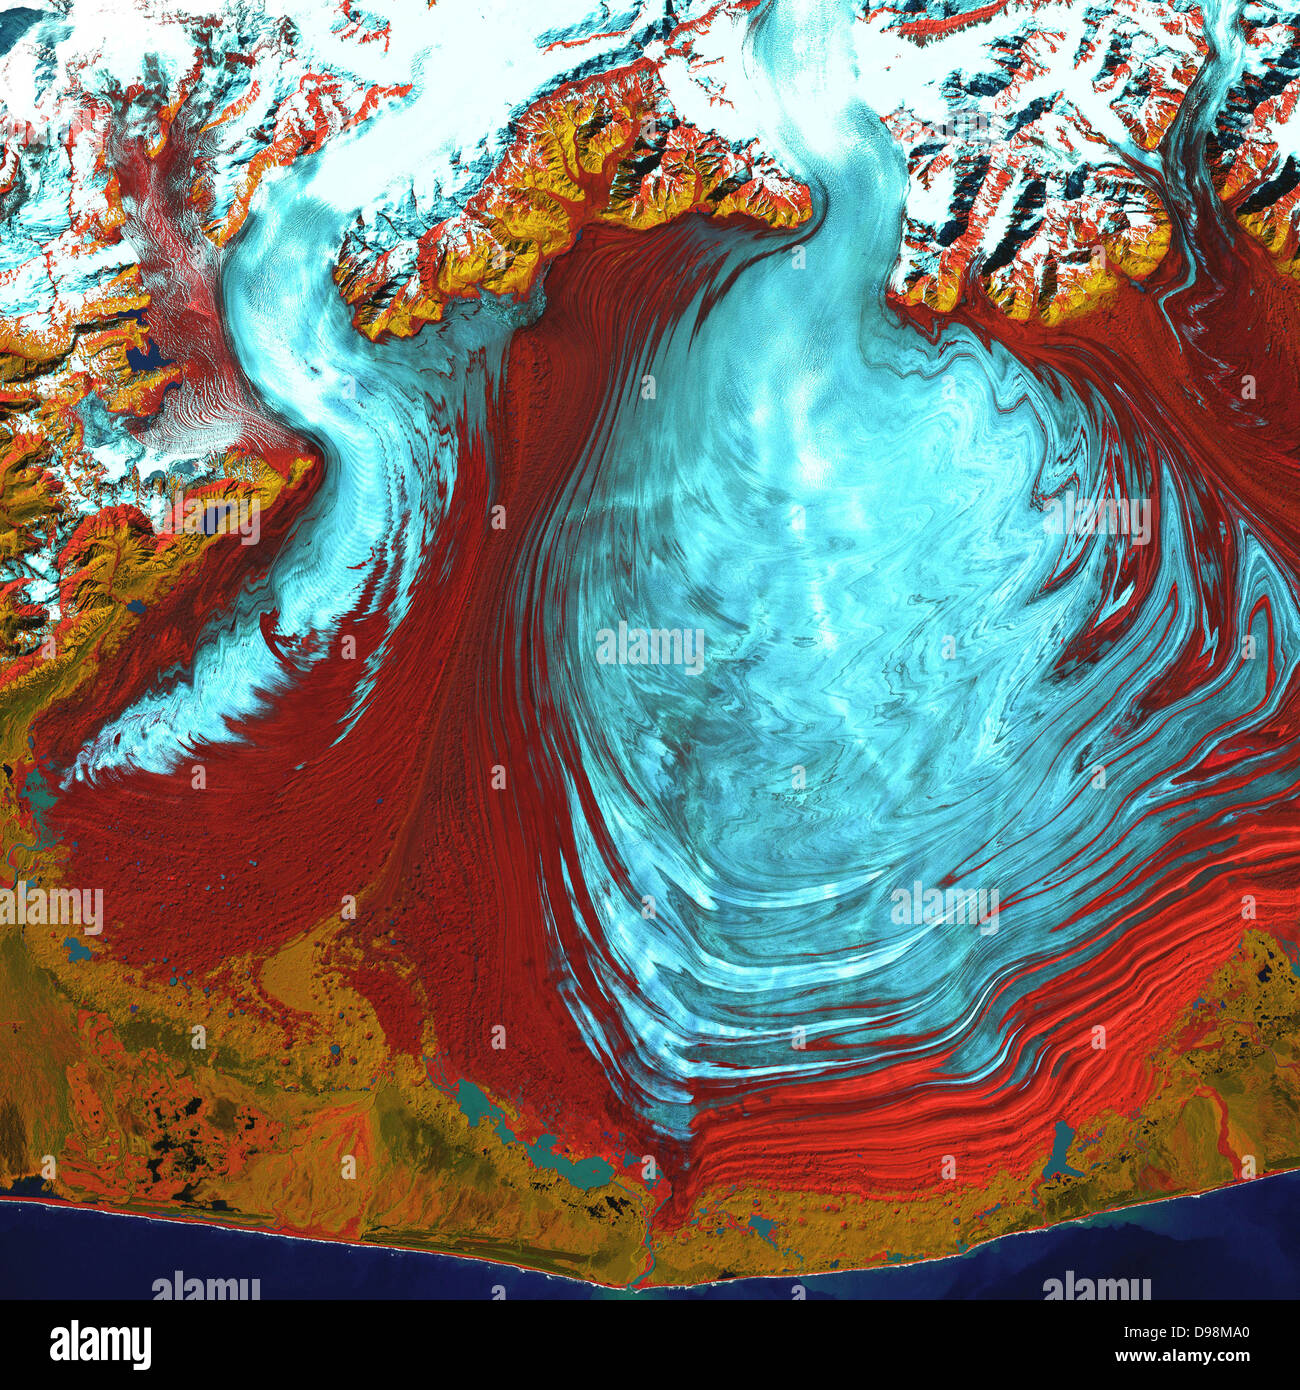 La langue des Malaspina Glacier, l'un des plus grands glaciers en Alaska, occupe la majeure partie de cette image. Les Malaspina se trouve à l'ouest de la baie de Yakutat et couvre environ 1 500 mi 2 (3 880 km2).Cette image a été acquise par Landsat 7 ETM + ("Enhanced Thematic Mapper plus) le 31 août 2000. C'est une image composite en fausses couleurs prise par infrarouge, l'infrarouge proche, et d'onde verte Banque D'Images